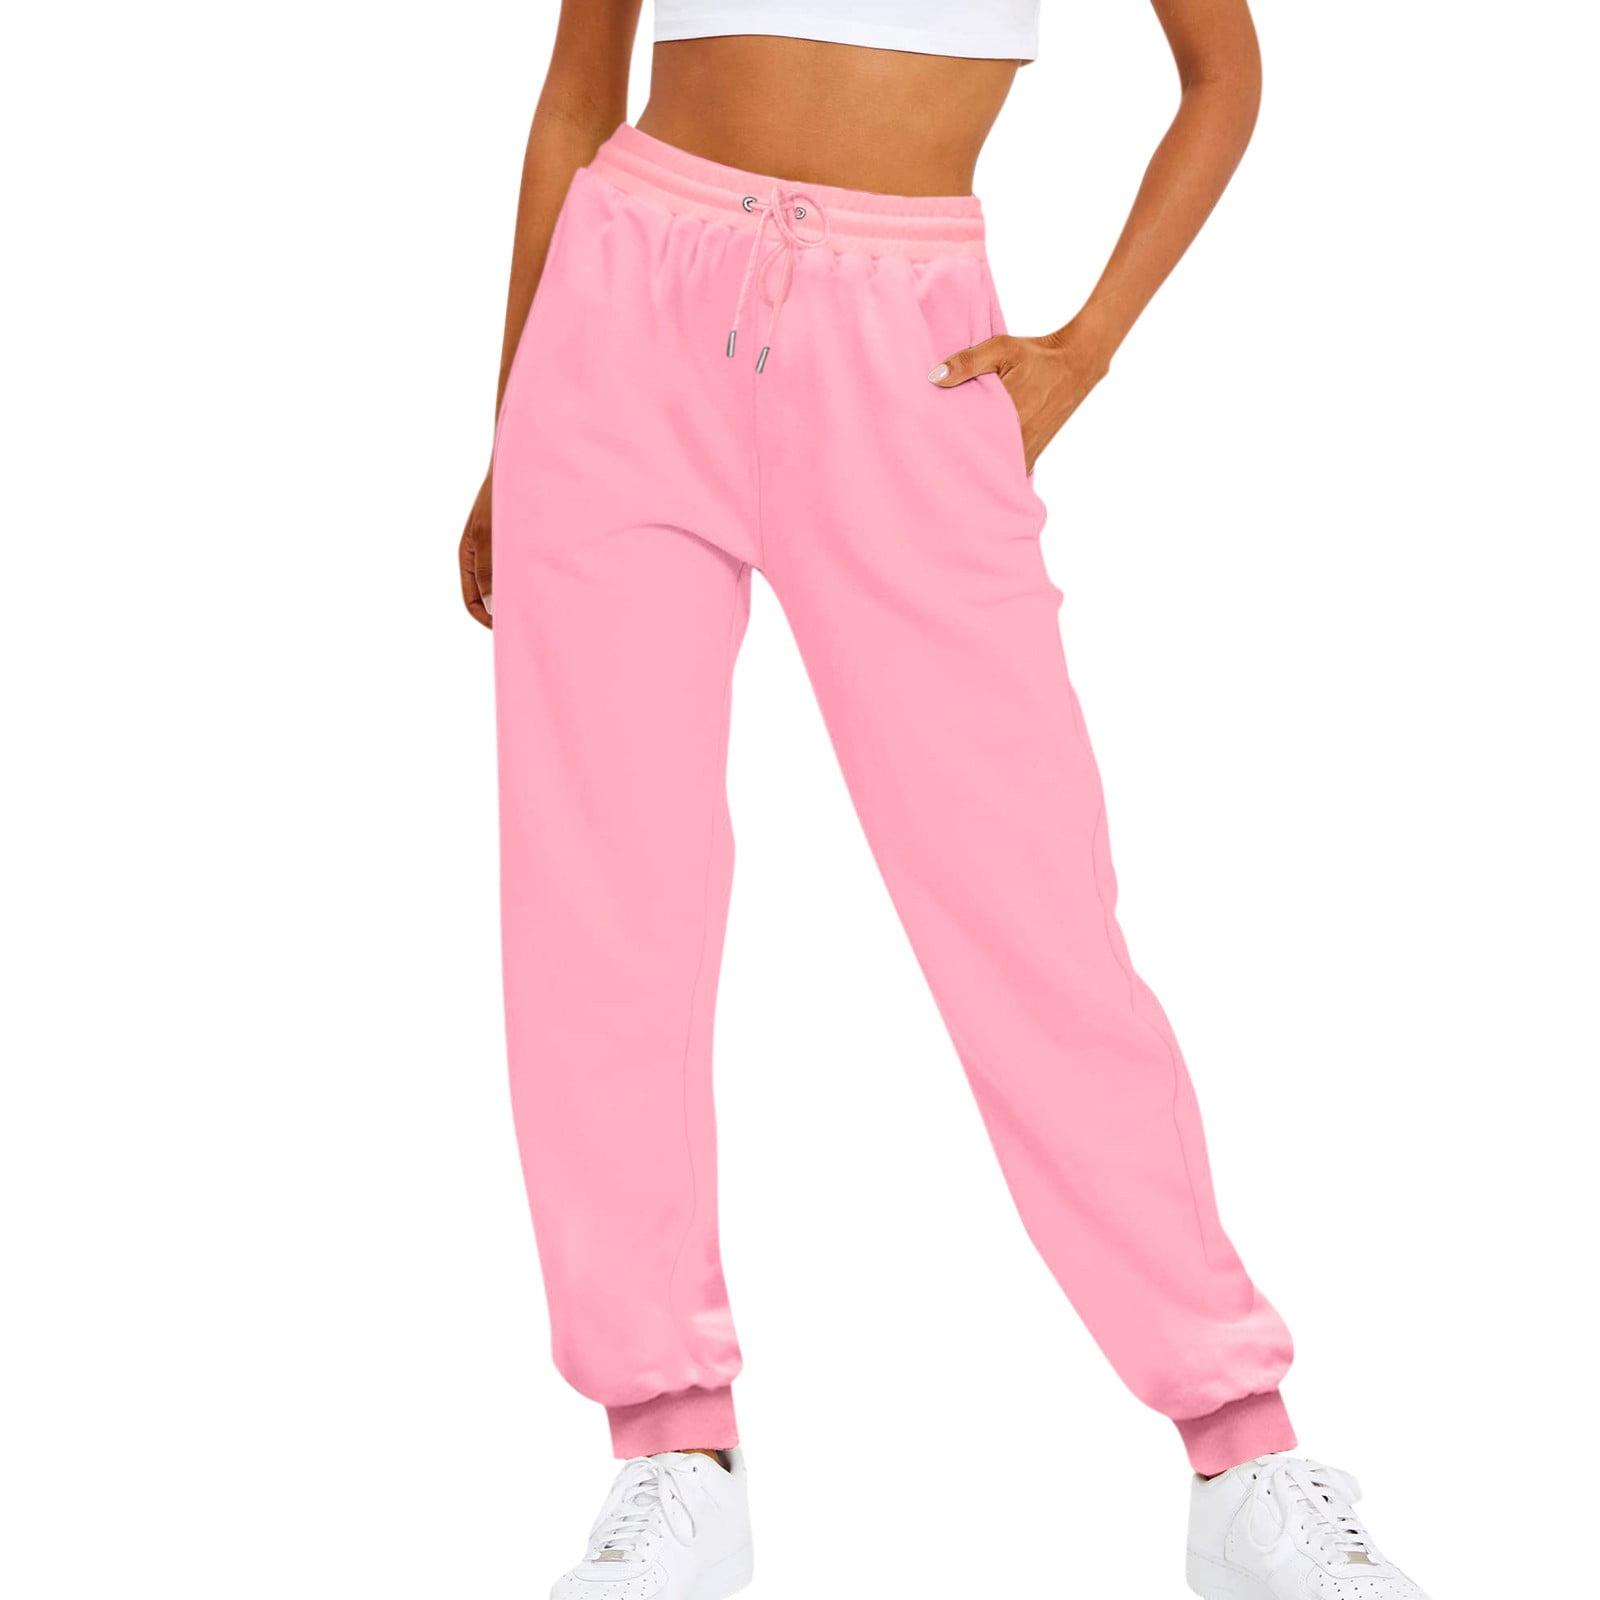 Kai Lite Joggers Lightweight Sweatpants Womens XL Regular Pink